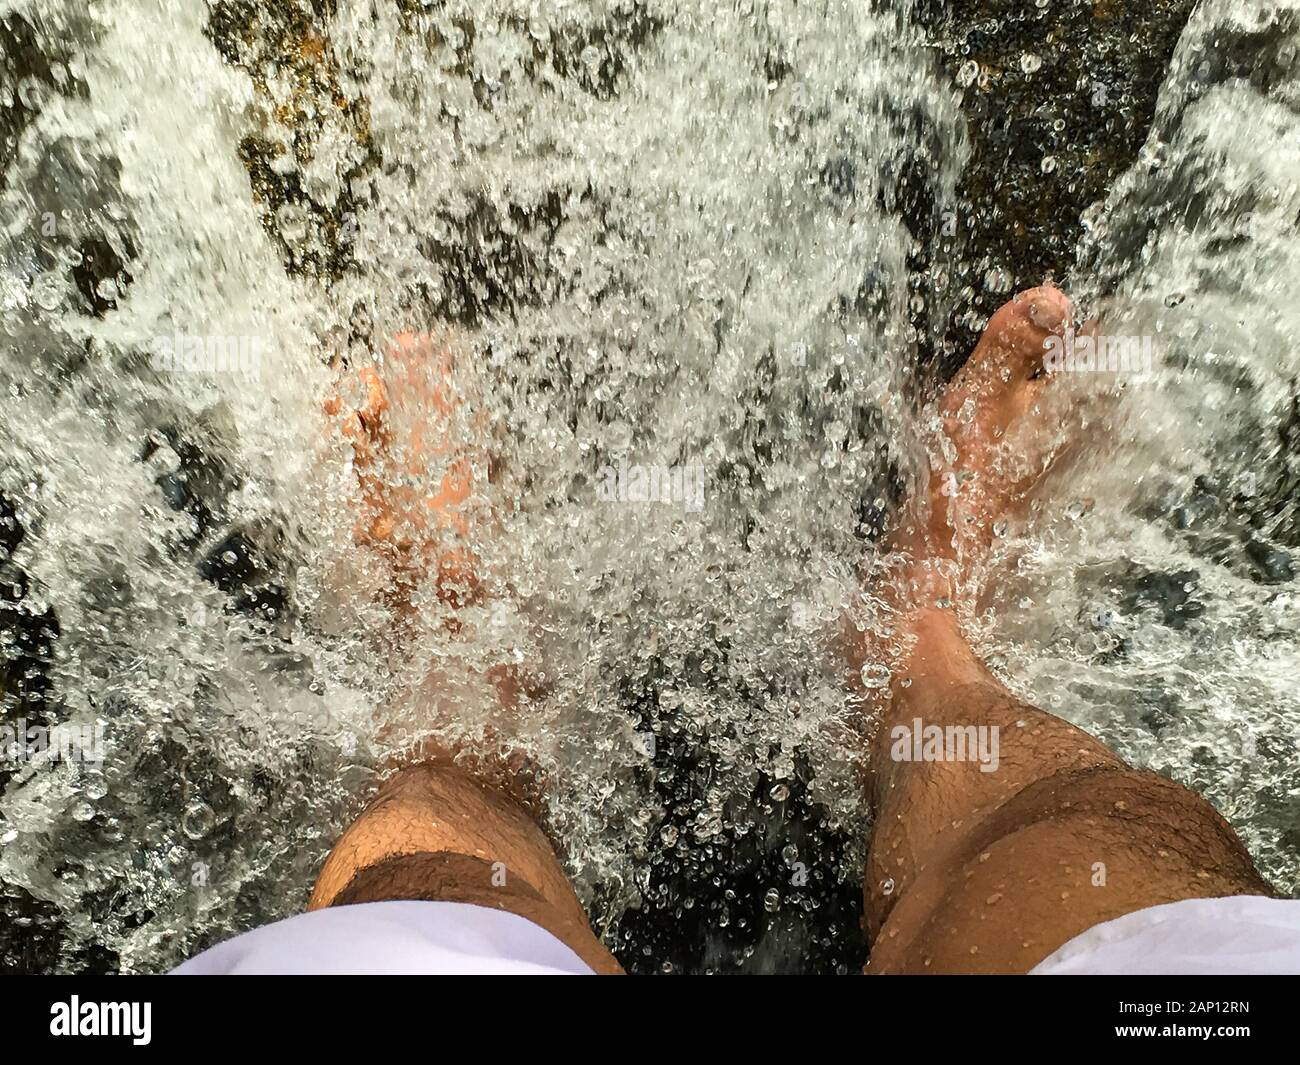 Le pied des deux pieds qui se trouvent dans la cascade qui coule JusQu'À ce que l'eau se scinde en granules Banque D'Images